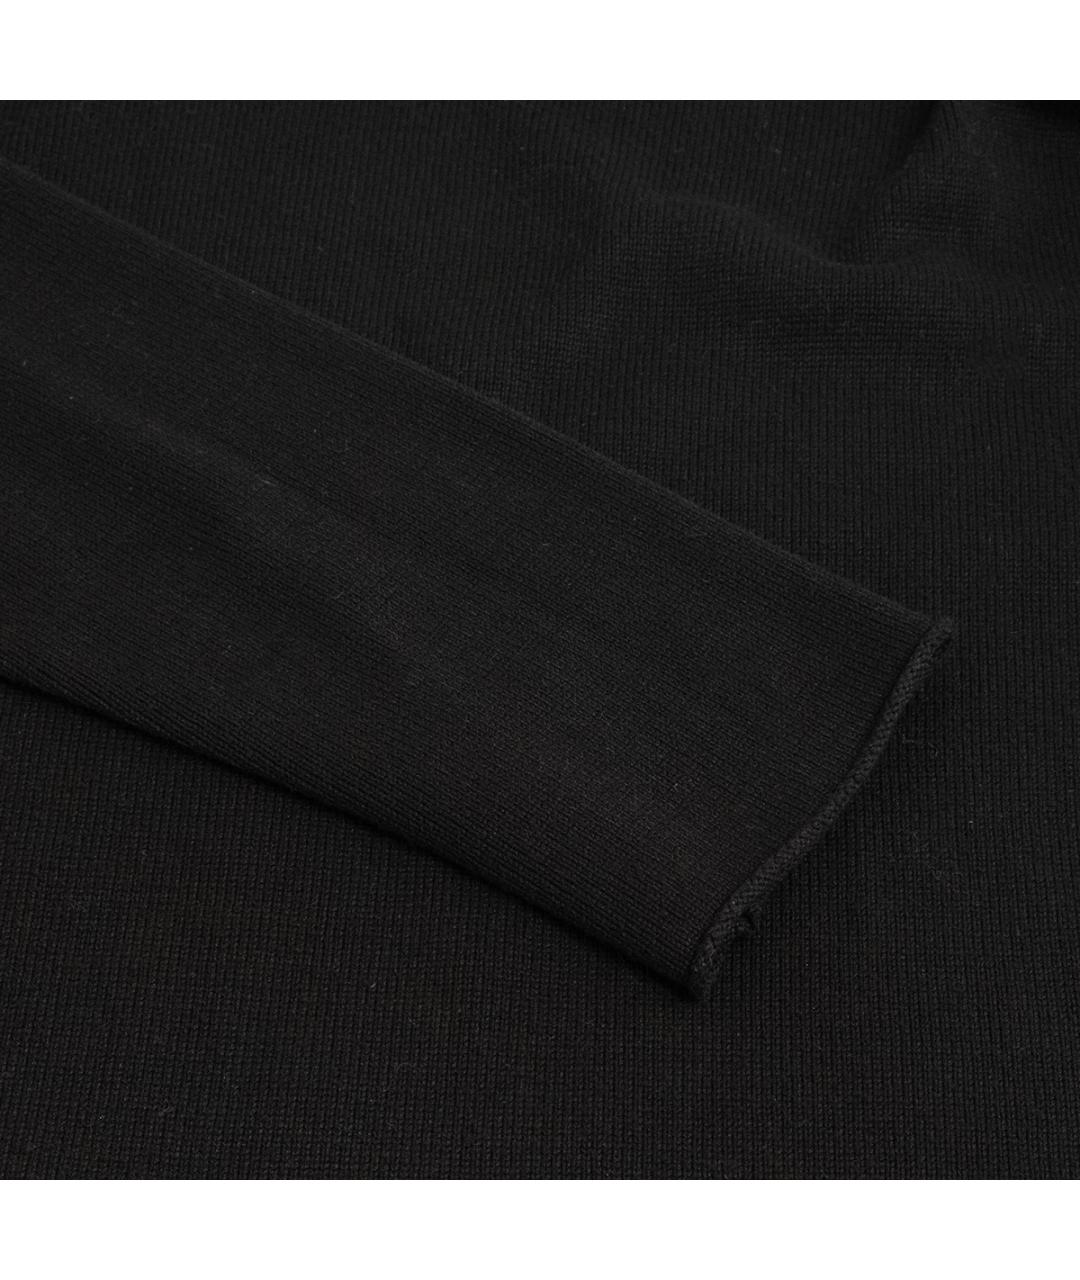 TRANSIT Черный вискозный джемпер / свитер, фото 4